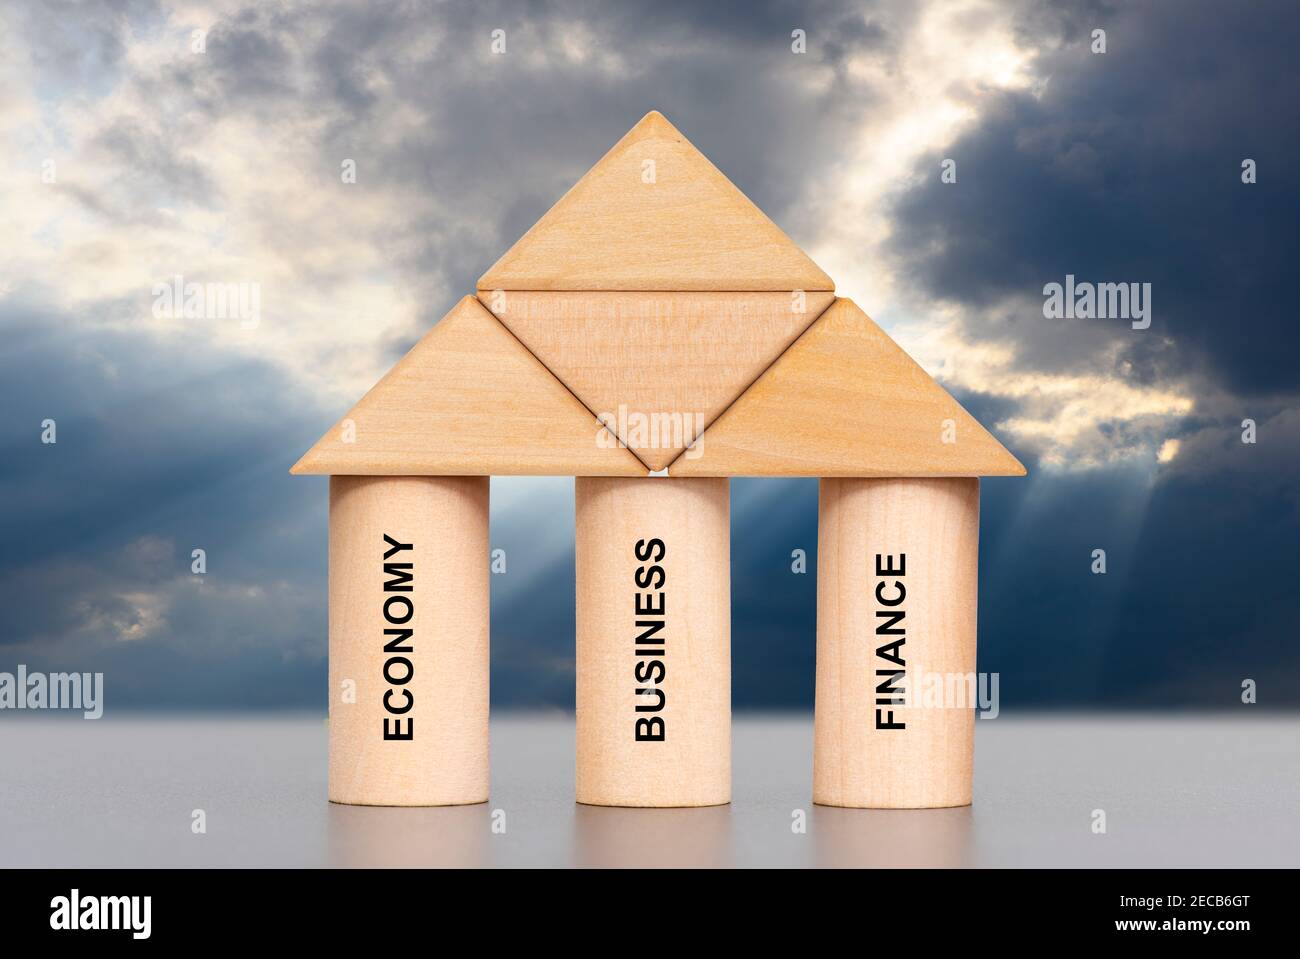 les trois piliers d'une stratégie commerciale réussie Banque D'Images